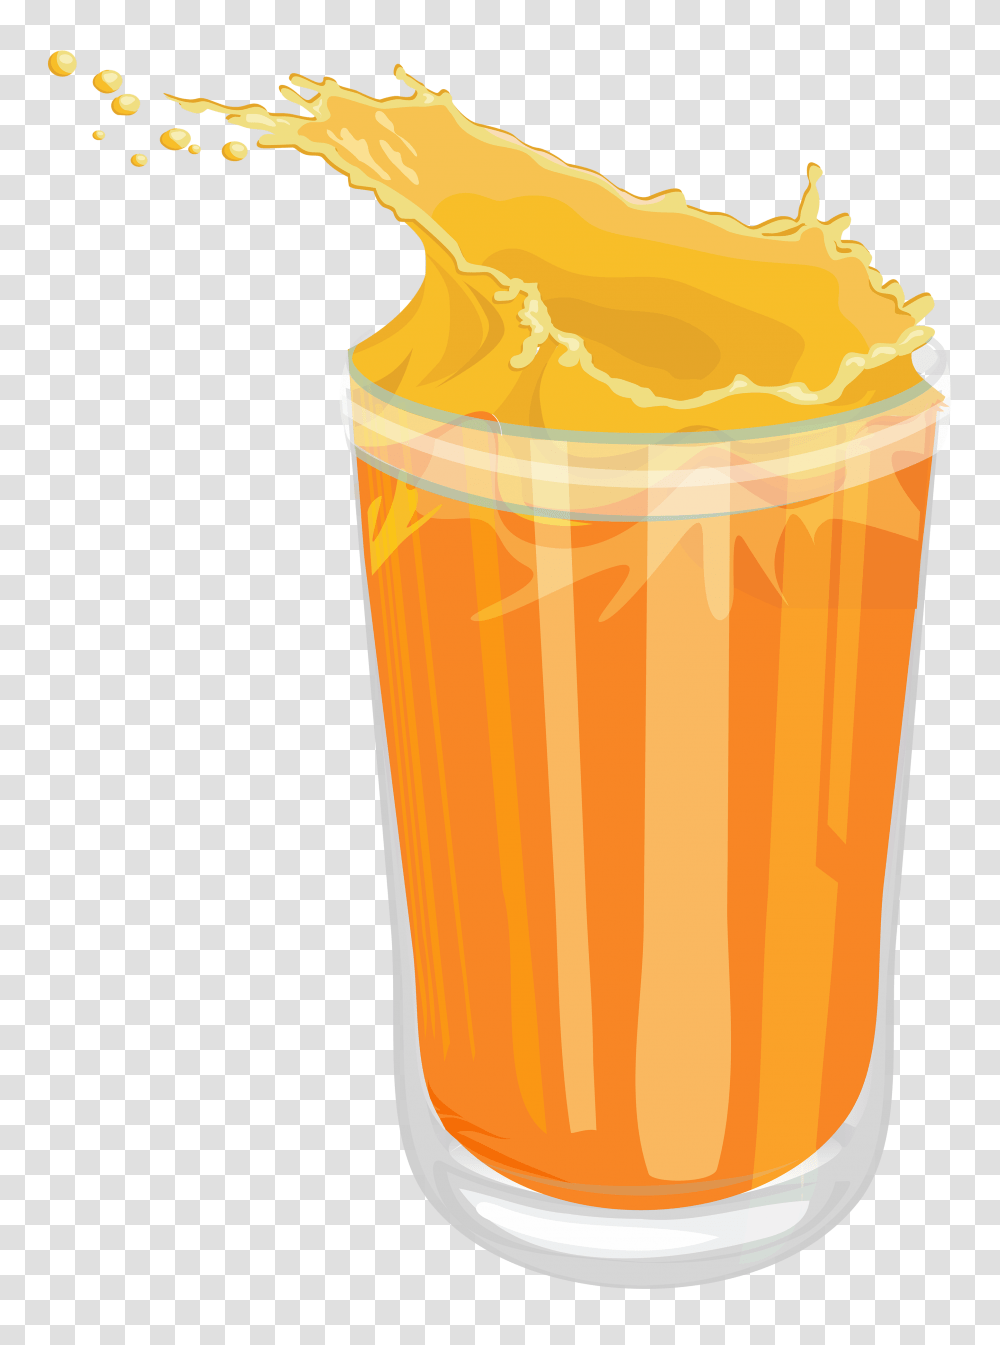 Orange Juice Dessert Drinks, Beverage, Smoothie, Beer Glass, Alcohol Transparent Png